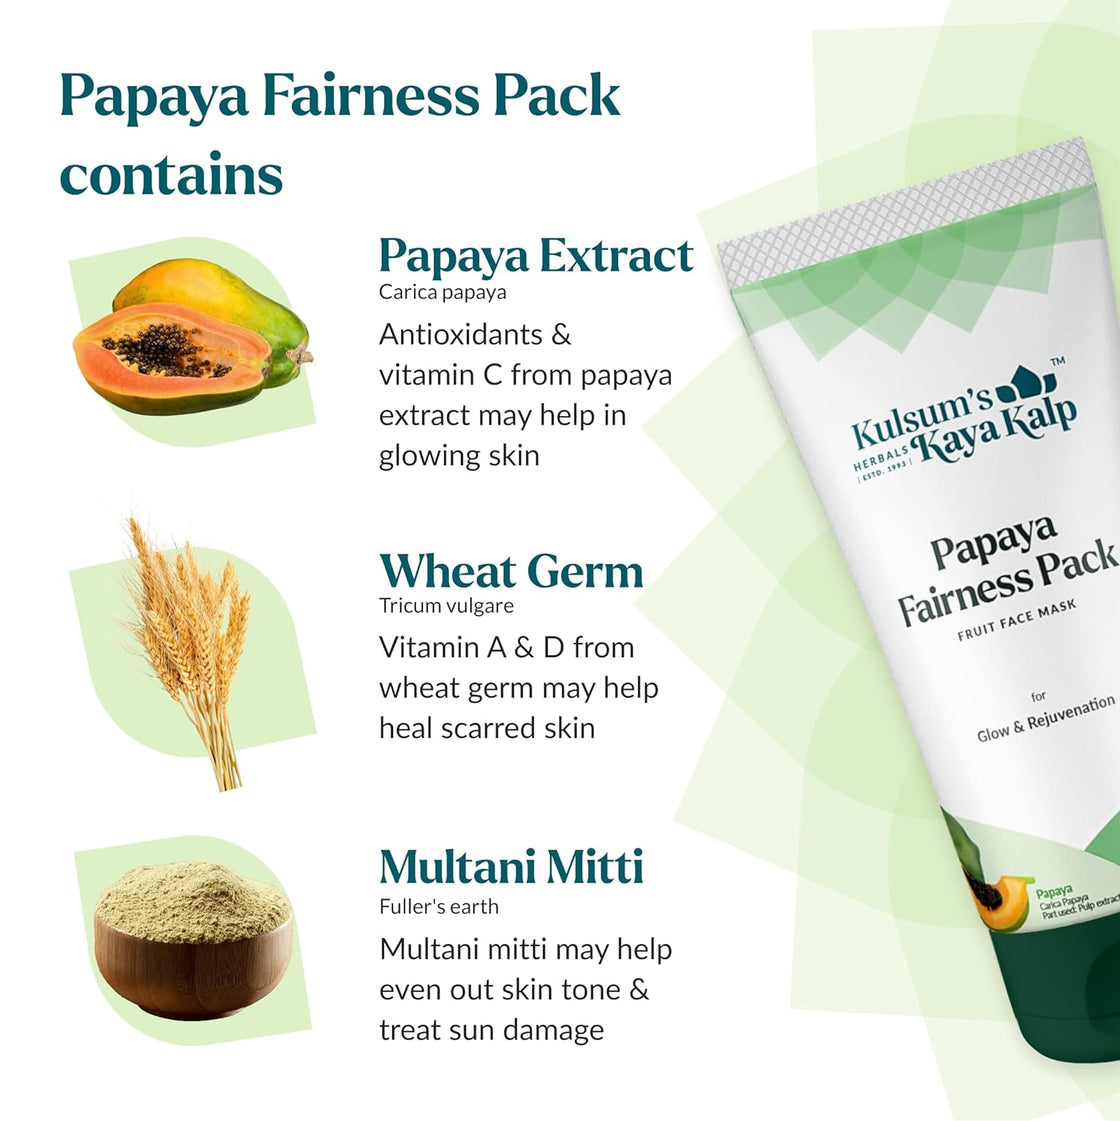 Kulsum's kayakalp Papaya Fairness Pack (250gm)